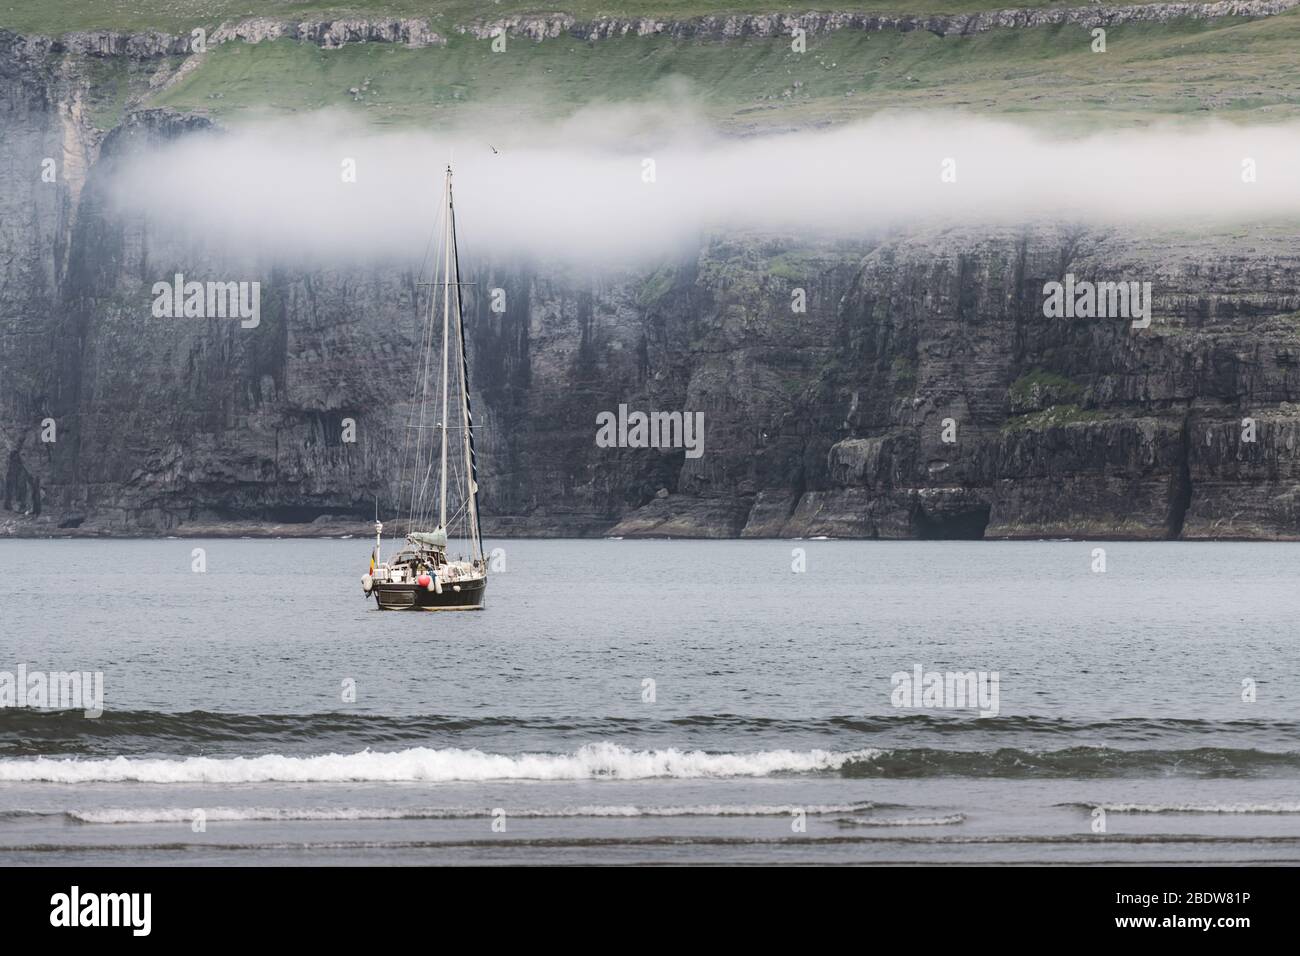 Yacht lonely près de la côte de Tjornuvik sur l'île de Streymoy, îles Féroé. Photographie de paysage Banque D'Images